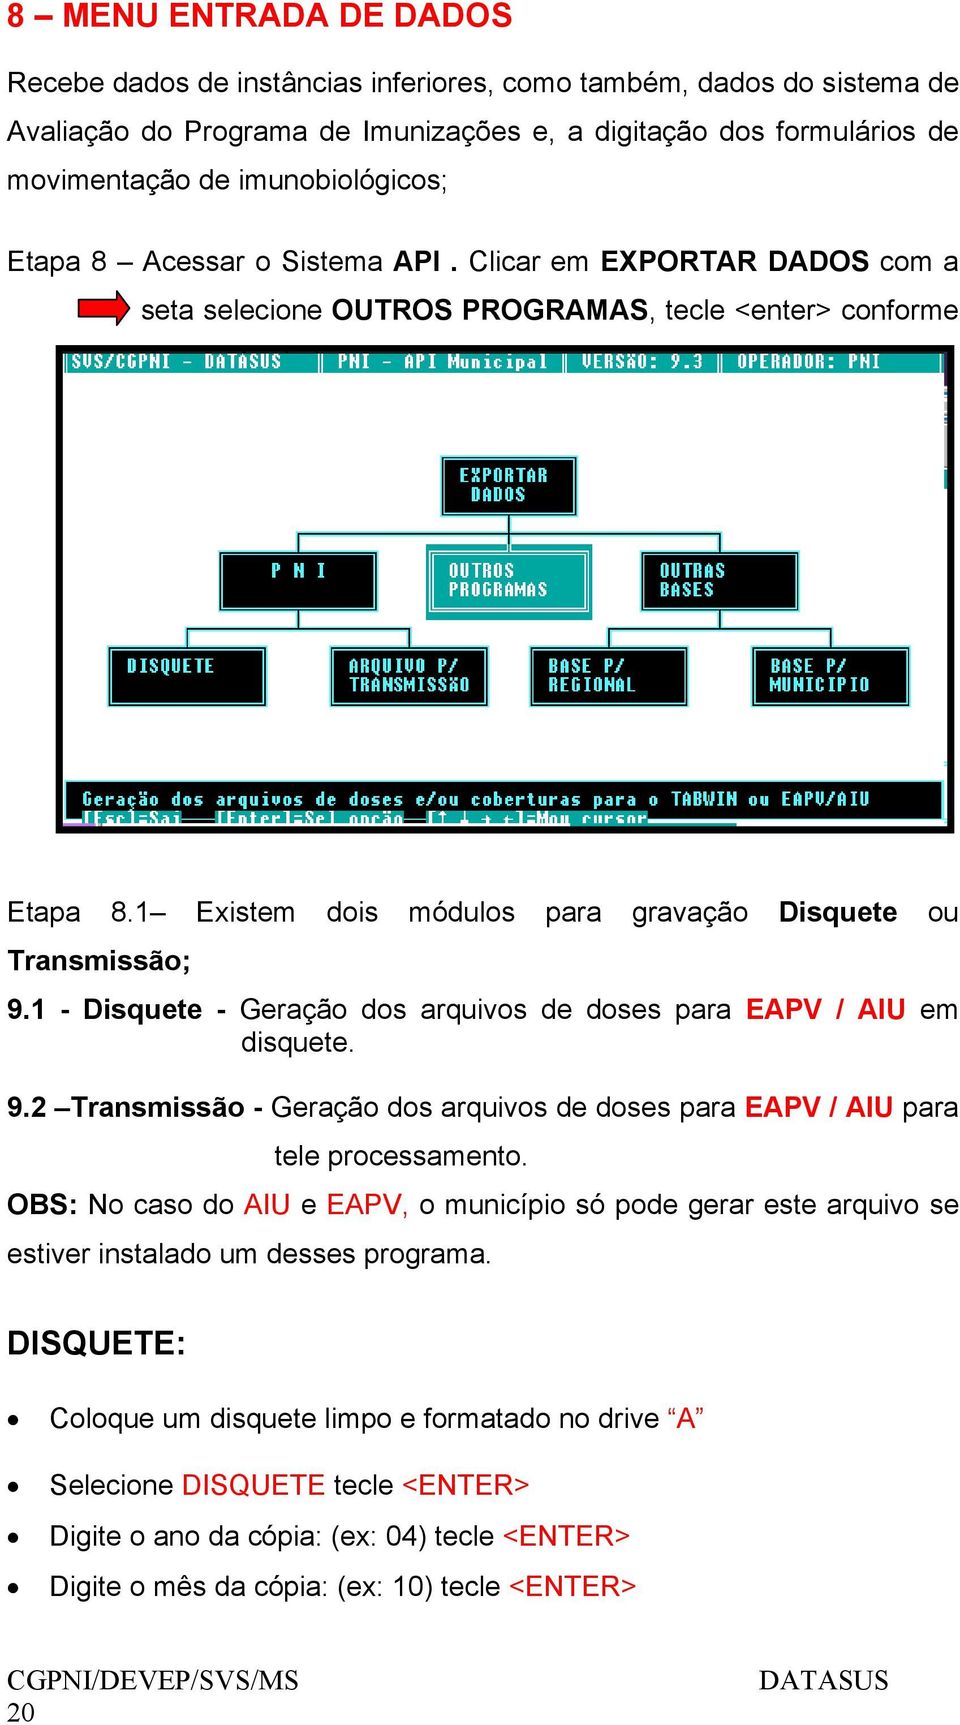 1 Existem dois módulos para gravação Disquete ou Transmissão; 9.1 - Disquete - Geração dos arquivos de doses para EAPV / AIU em disquete. 9.2 Transmissão - Geração dos arquivos de doses para EAPV / AIU para tele processamento.